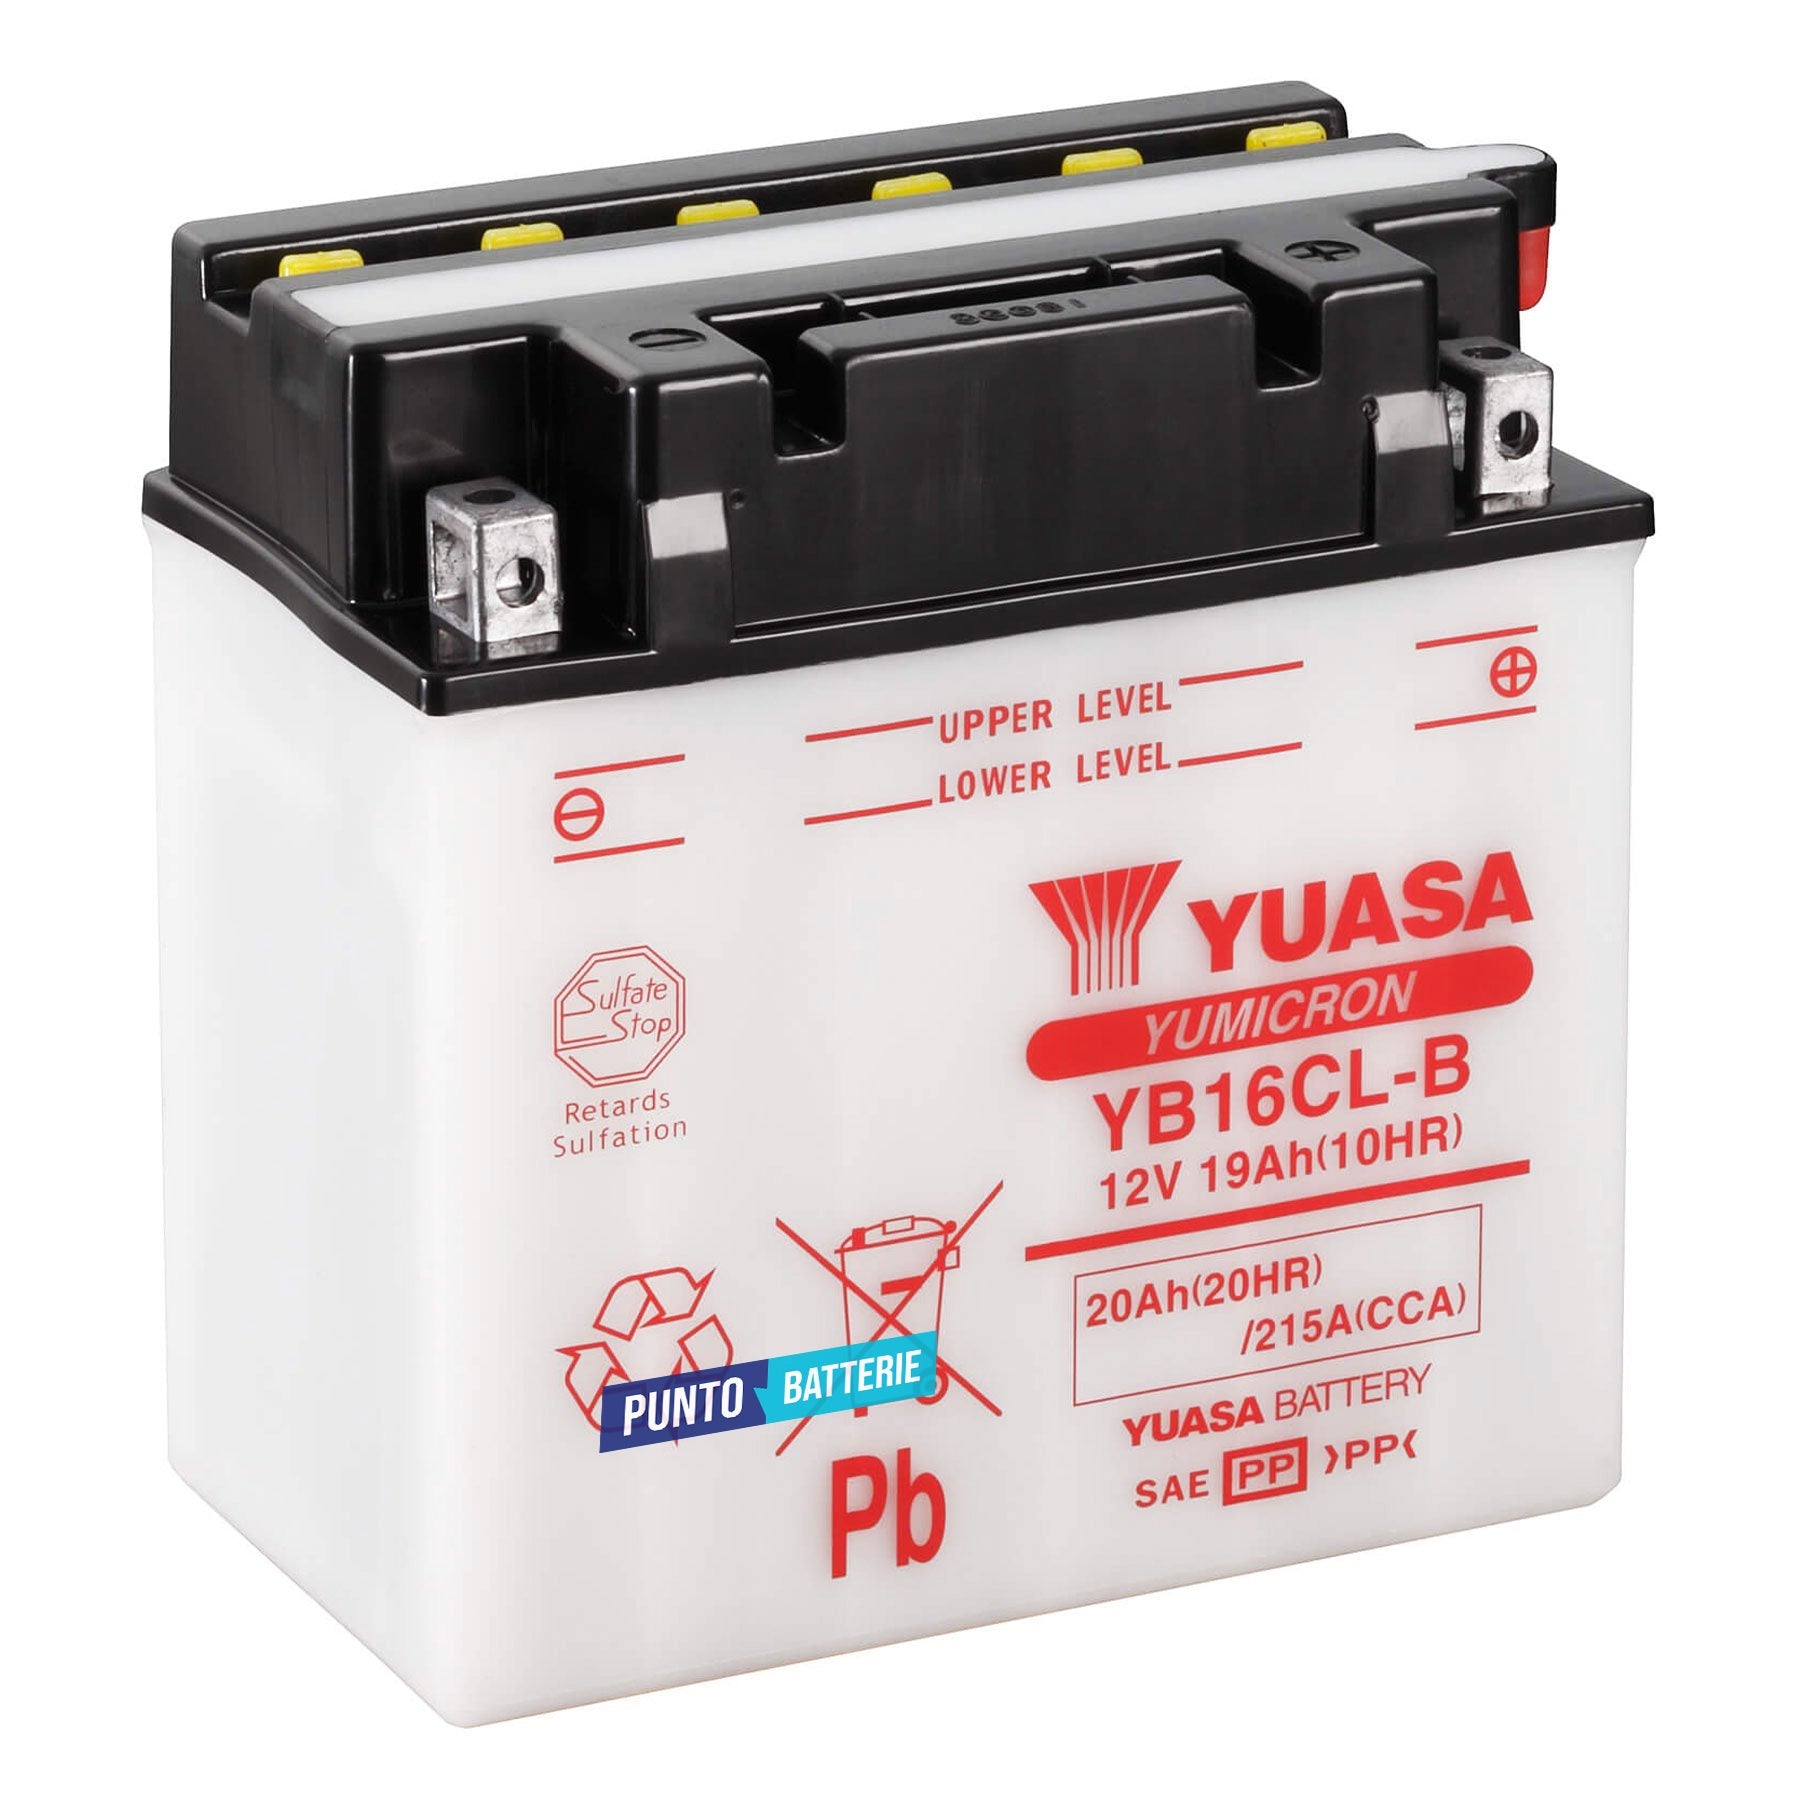 Batteria originale Yuasa YuMicron YB16CL-B, dimensioni 175 x 100 x 175, polo positivo a destra, 12 volt, 19 amperora, 240 ampere. Batteria per moto, scooter e powersport.